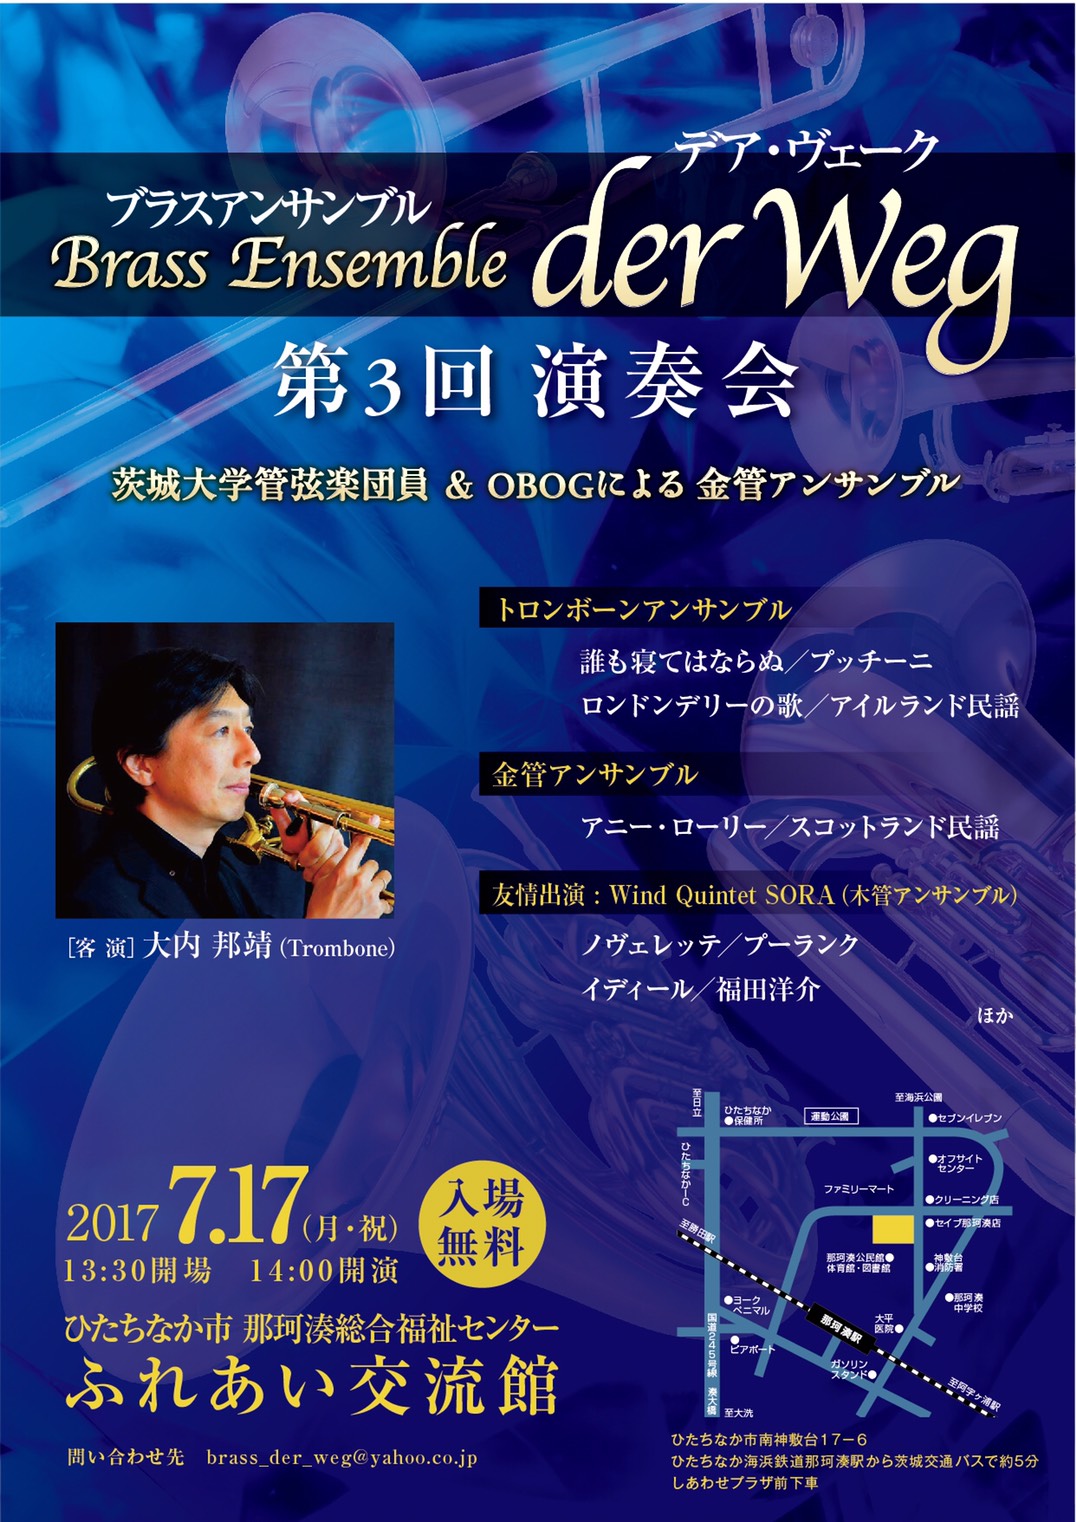 Brass Ensemble der Weg デアヴェーク